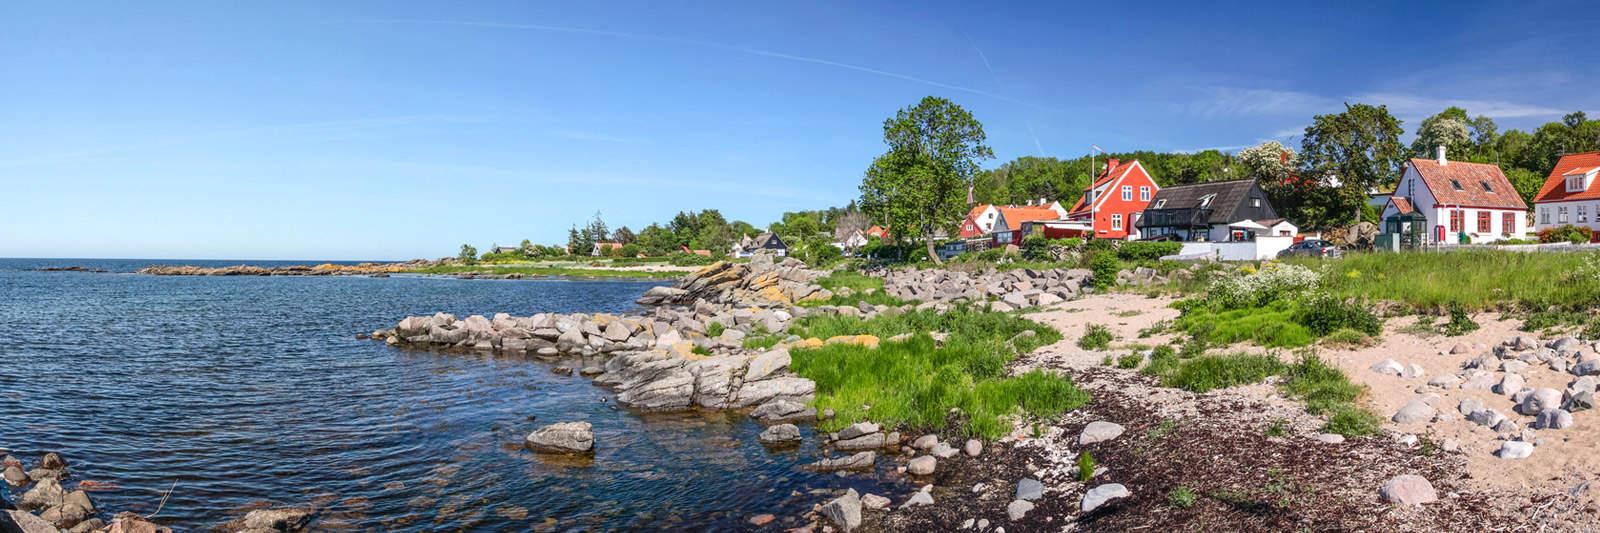 21 Ferienwohnungen und Ferienhäuser in Sønderhav - tourist-online.de